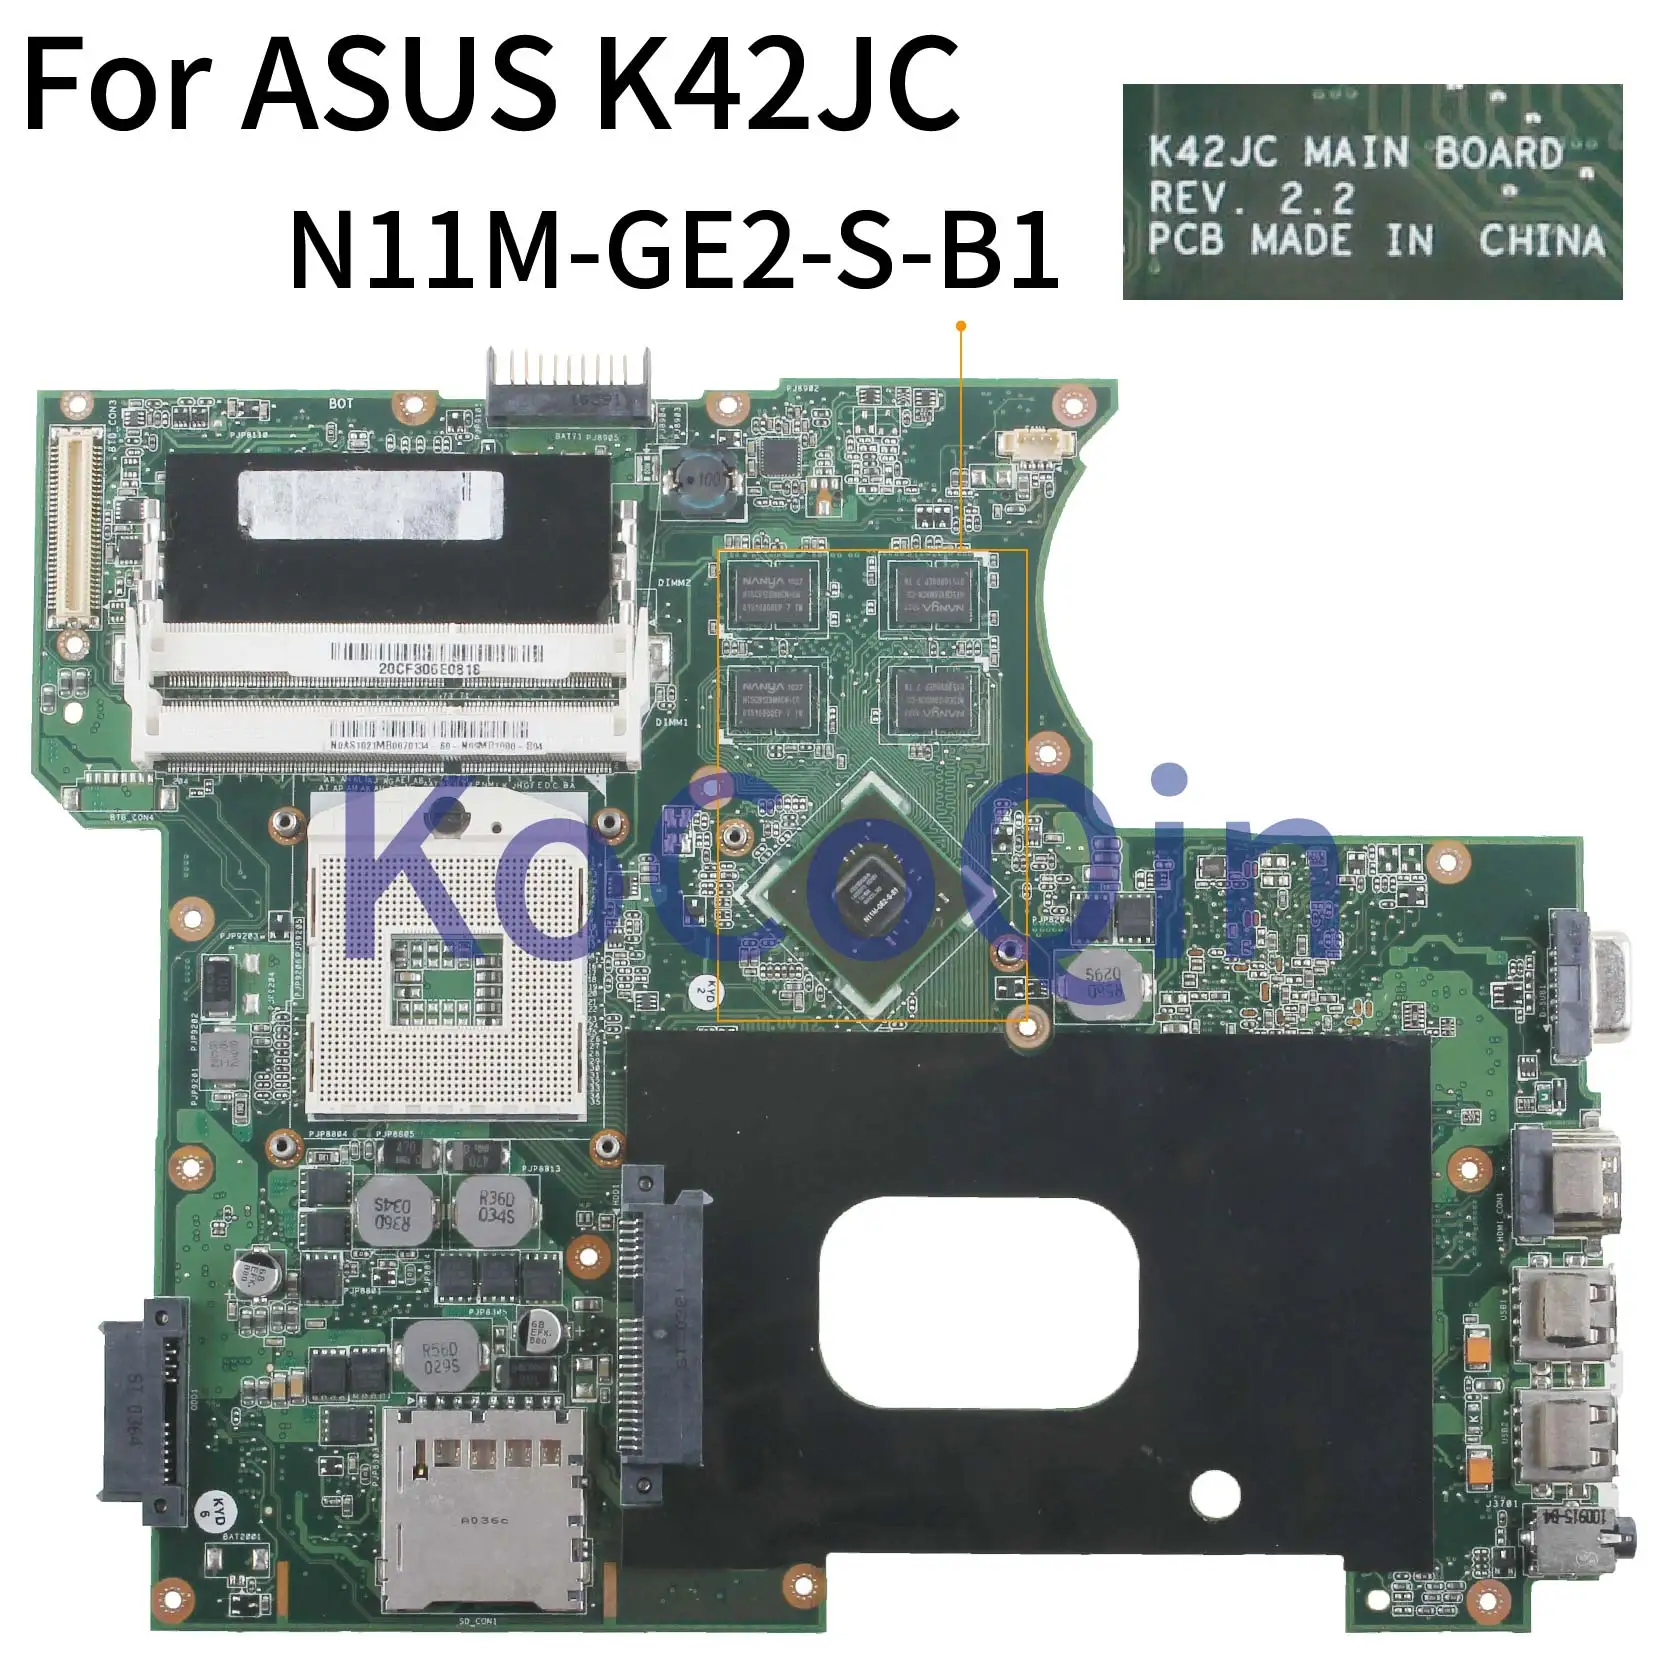 

KoCoQin Laptop motherboard For ASUS K42JC A42J K42J X42j A40J GT310M Mainboard REV.2.2 HM55 N11M-GE2-S-B1